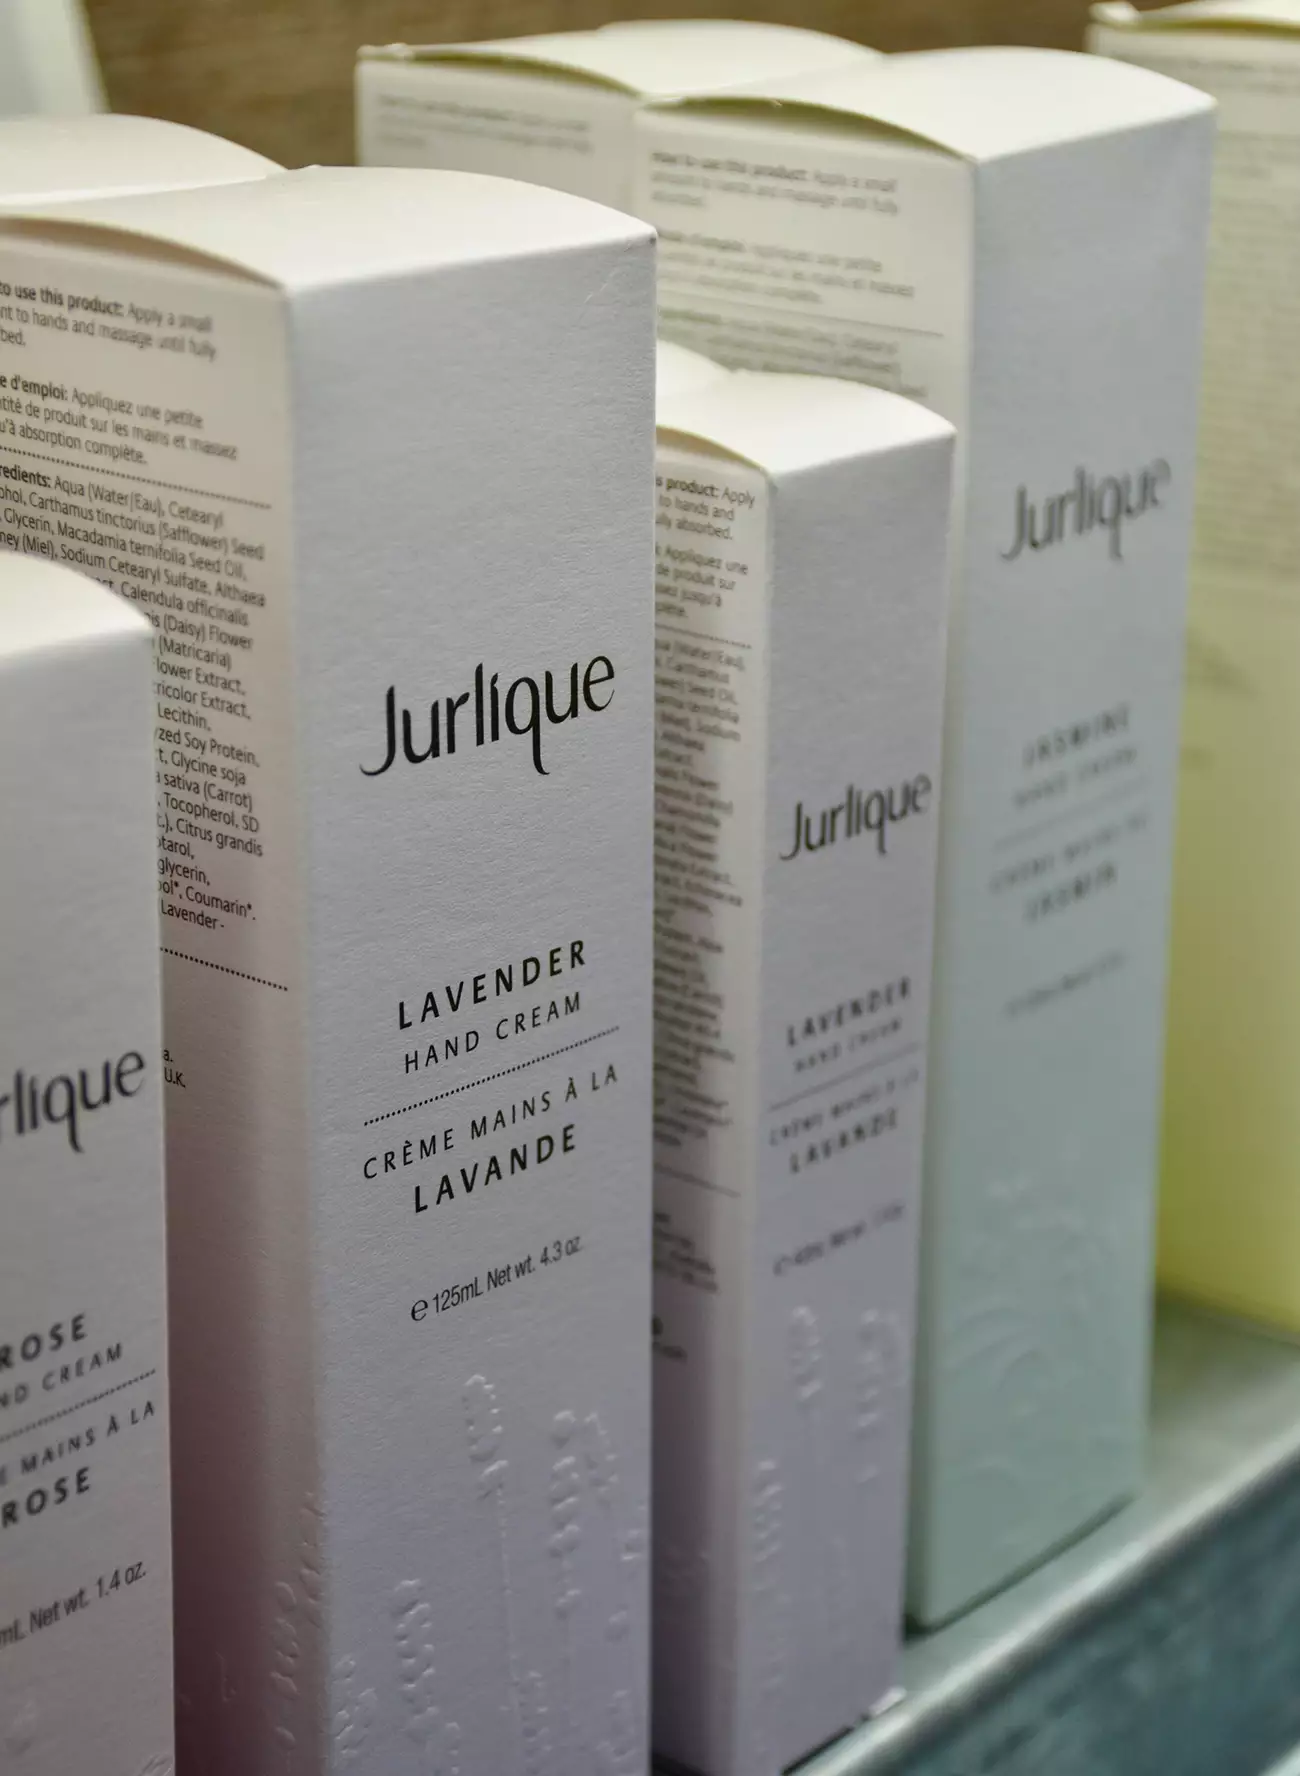 Jurlique hand cream on shop shelf at Daylesford Day Spa